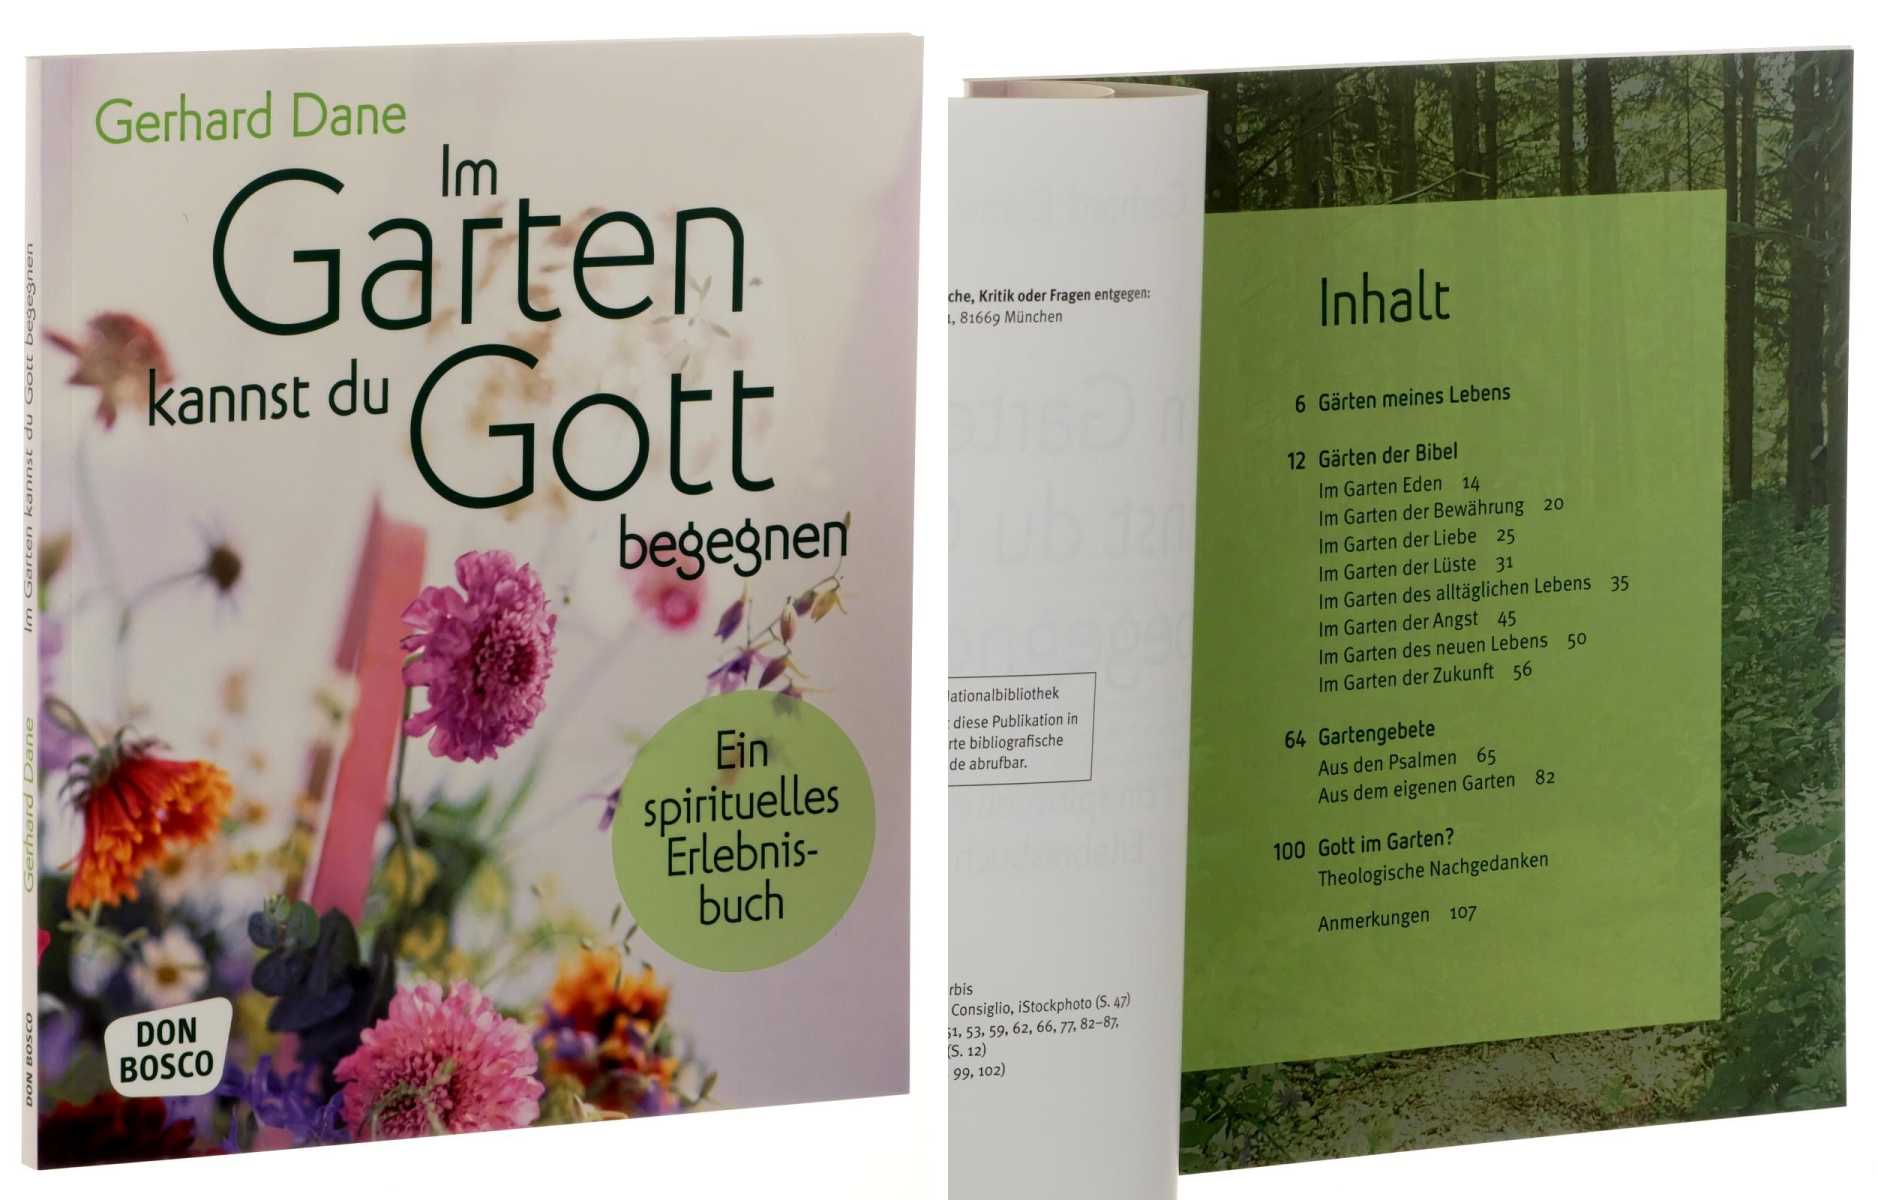 Dane, Gerhard:  Im Garten kannst du Gott begegnen. Ein spirituelles Erlebnisbuch. 